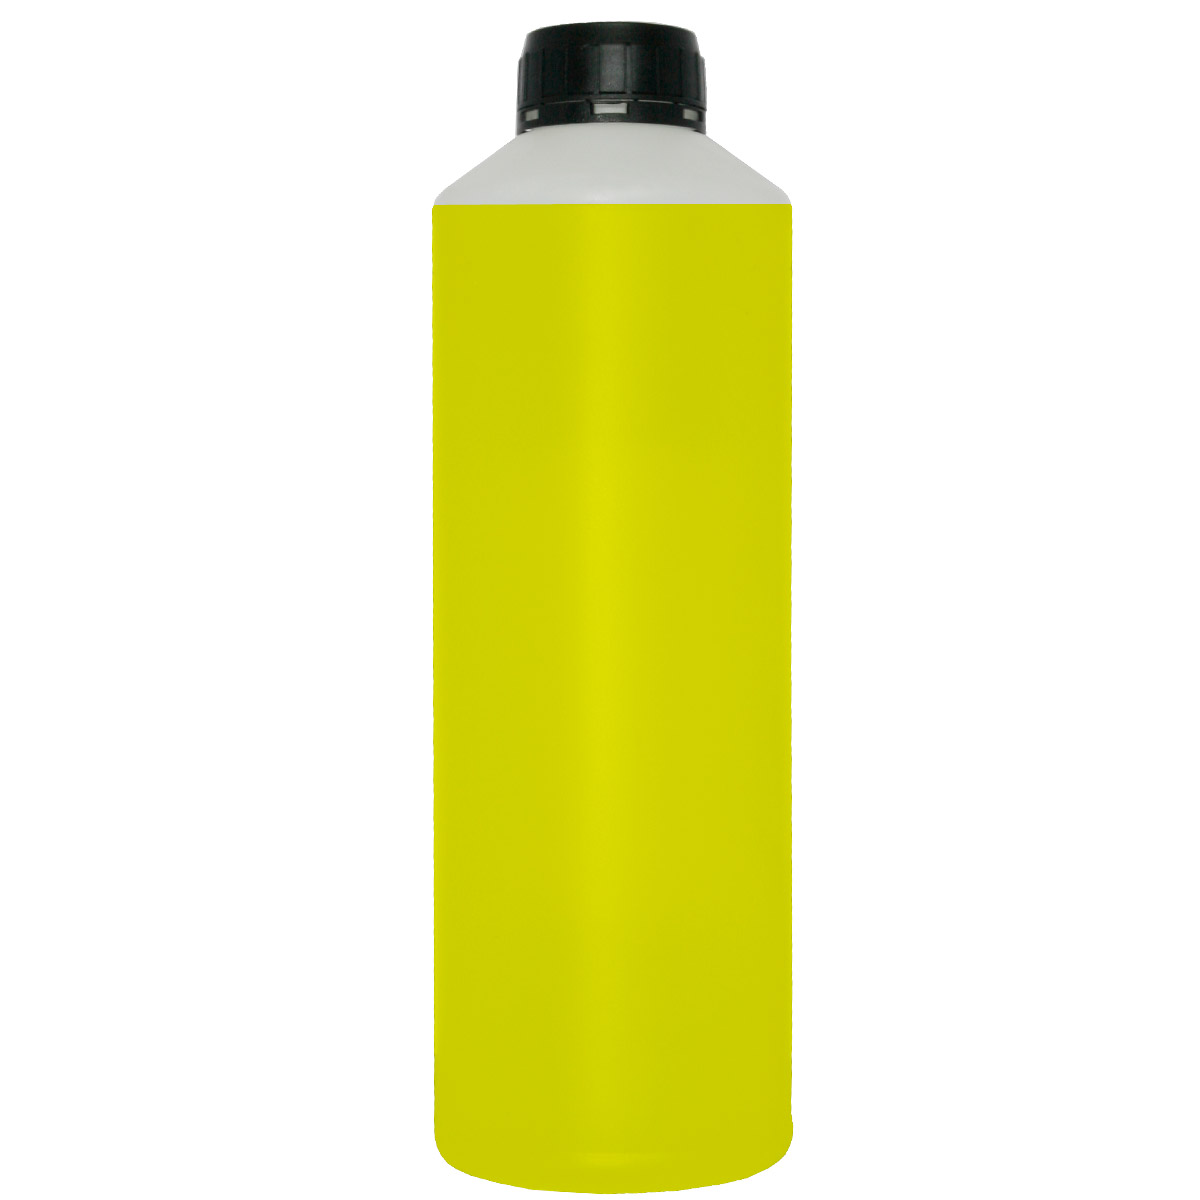 Χύμα Μελάνι για CANON YELLOW 500ml refill ink κίτρινο μελάνι για γέμισμα / αναγόμωση δοχείου εκτυπωτή ( ink cartridge ) inkjet